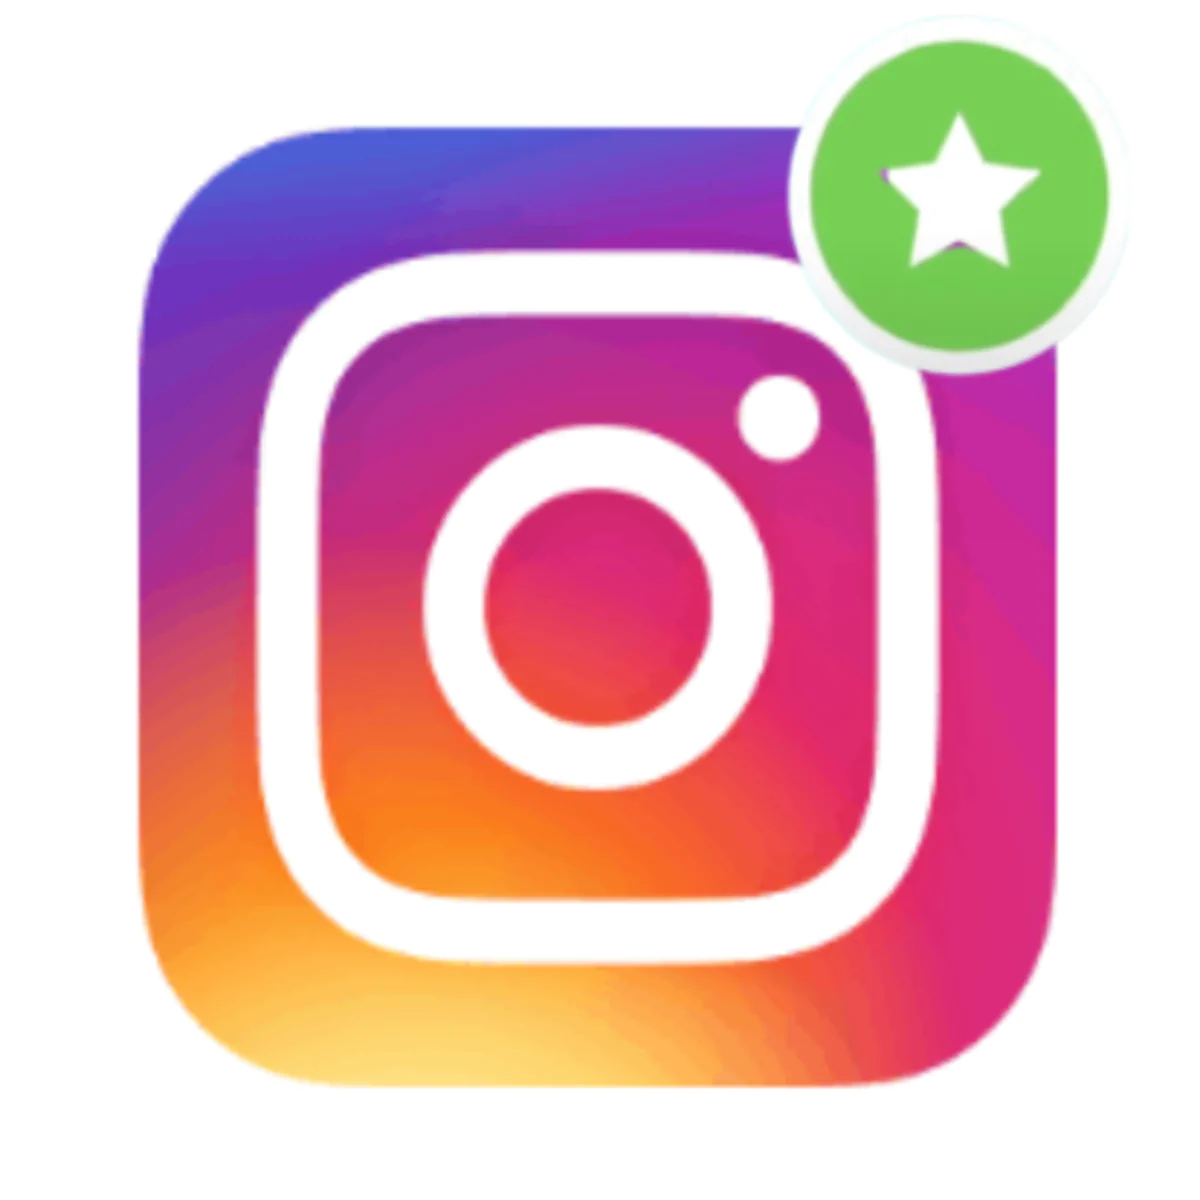 Closer ‑ Instagram Followers